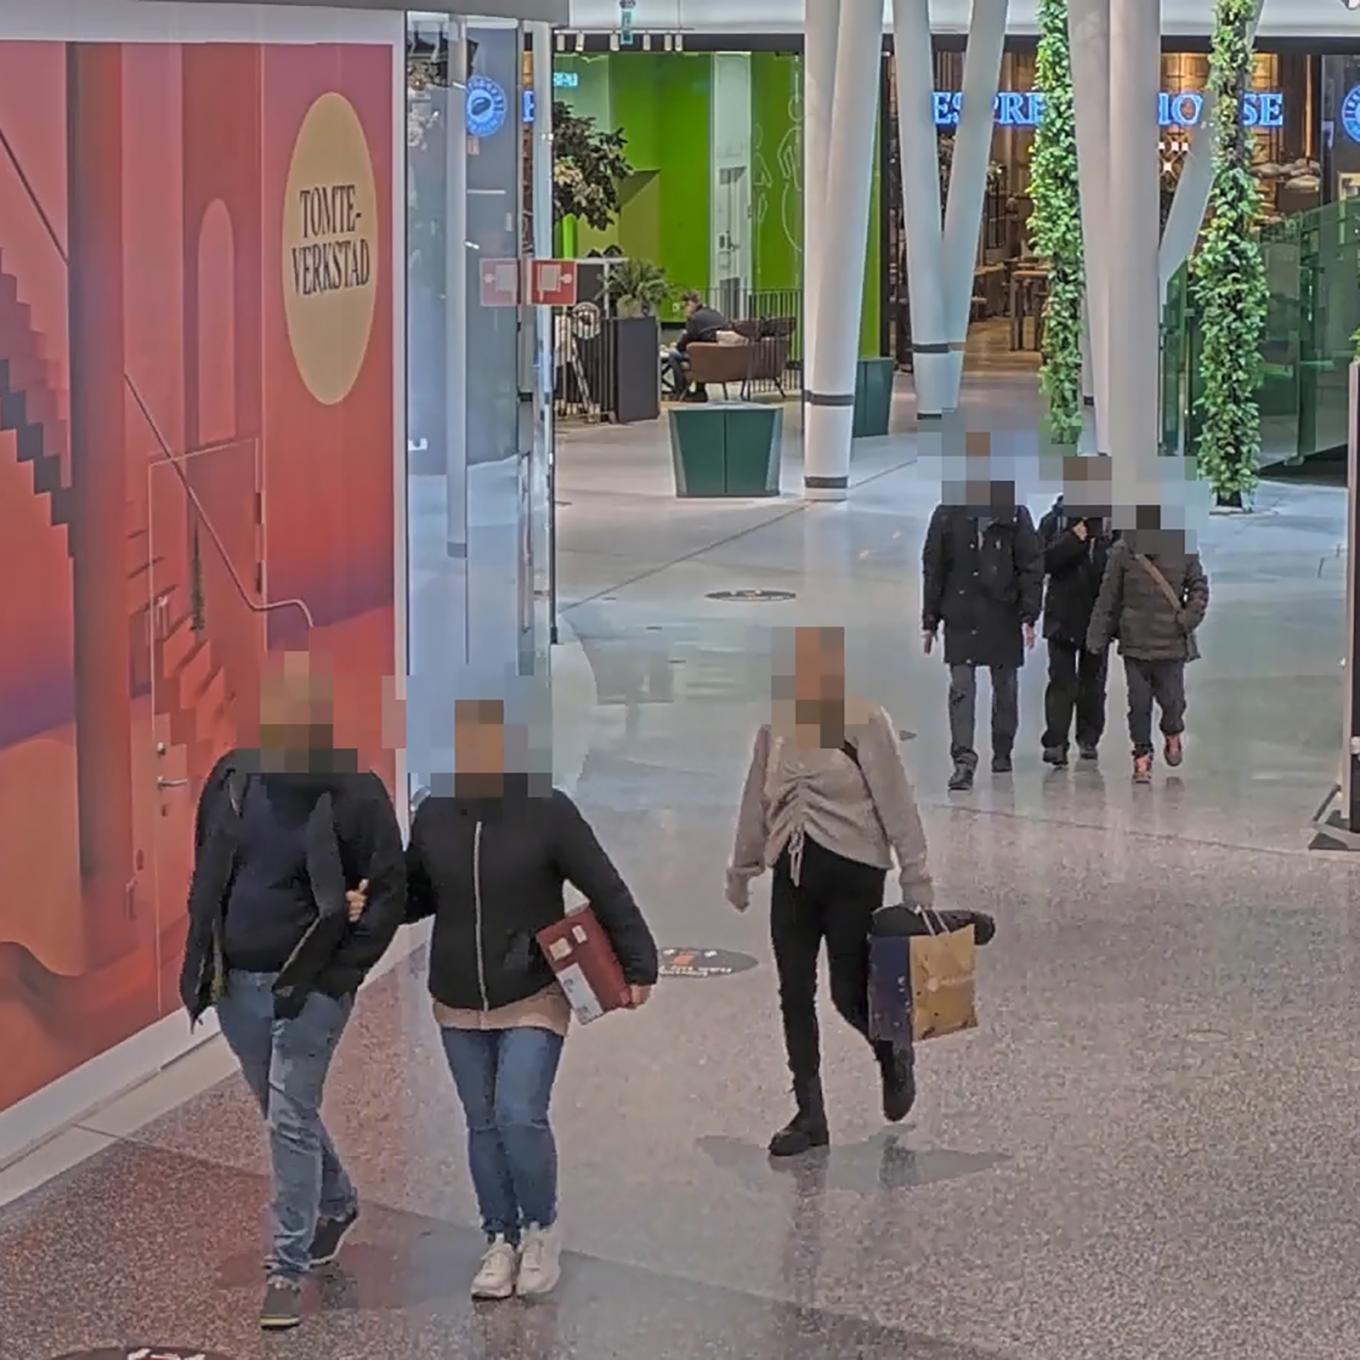 Espacio público con personas con caras borrosas debido a AXIS Live Privacy Shield.